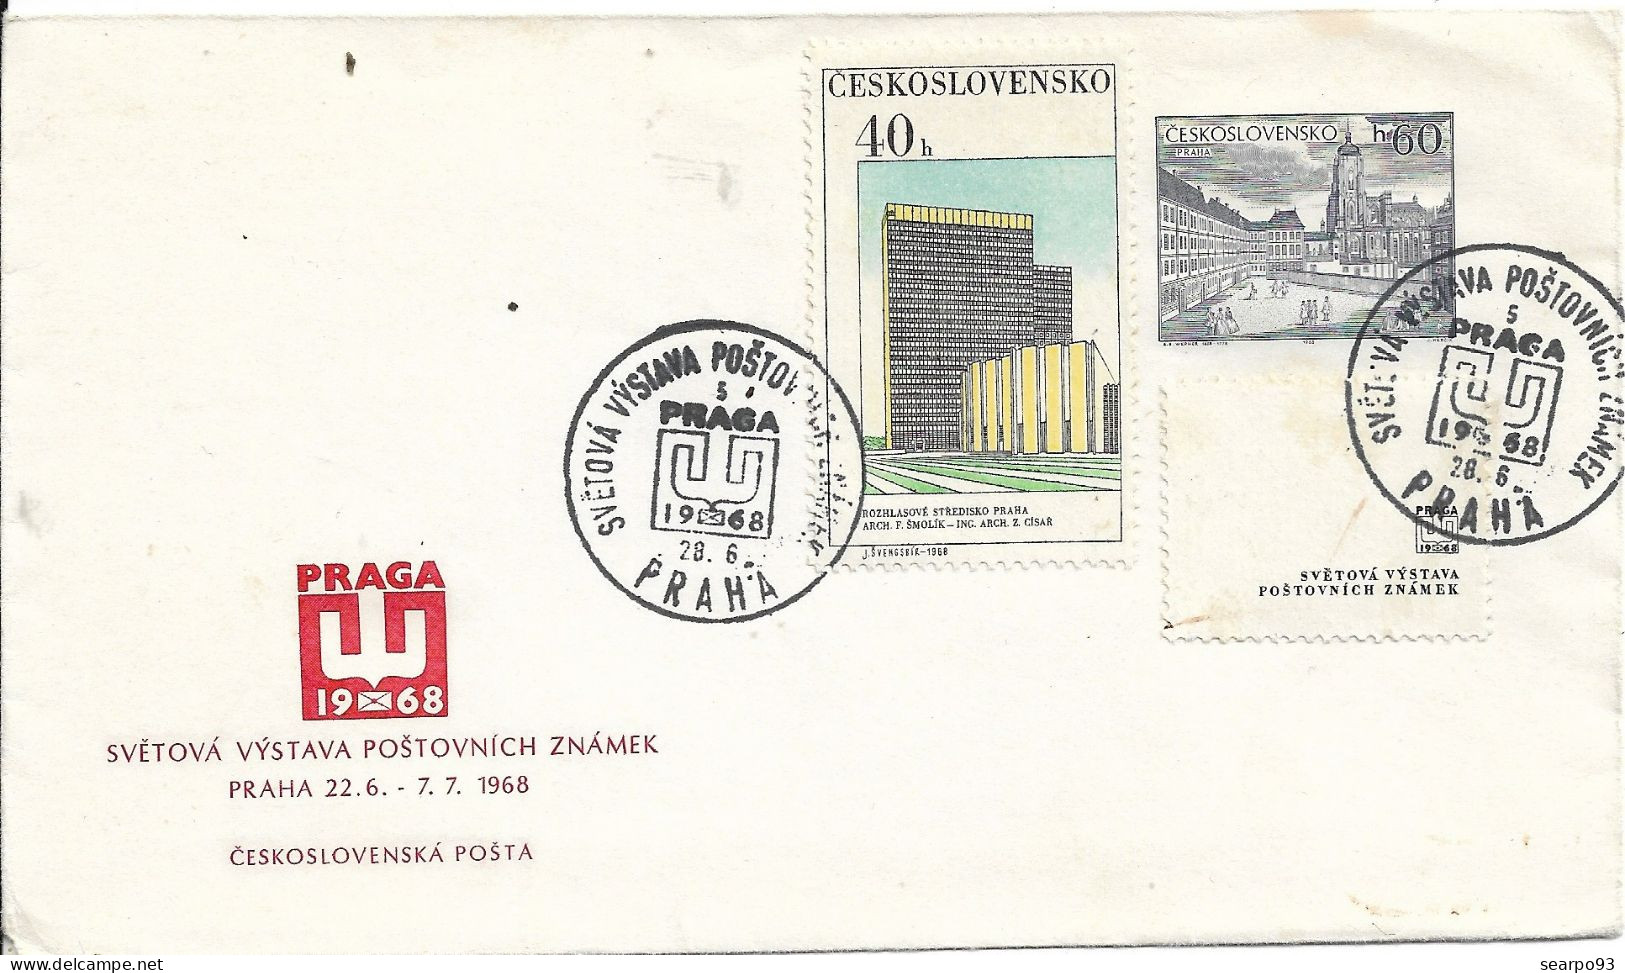 CZECHOSLOVAKIA. POSTMARK. PRAHA. 1968 - Covers & Documents